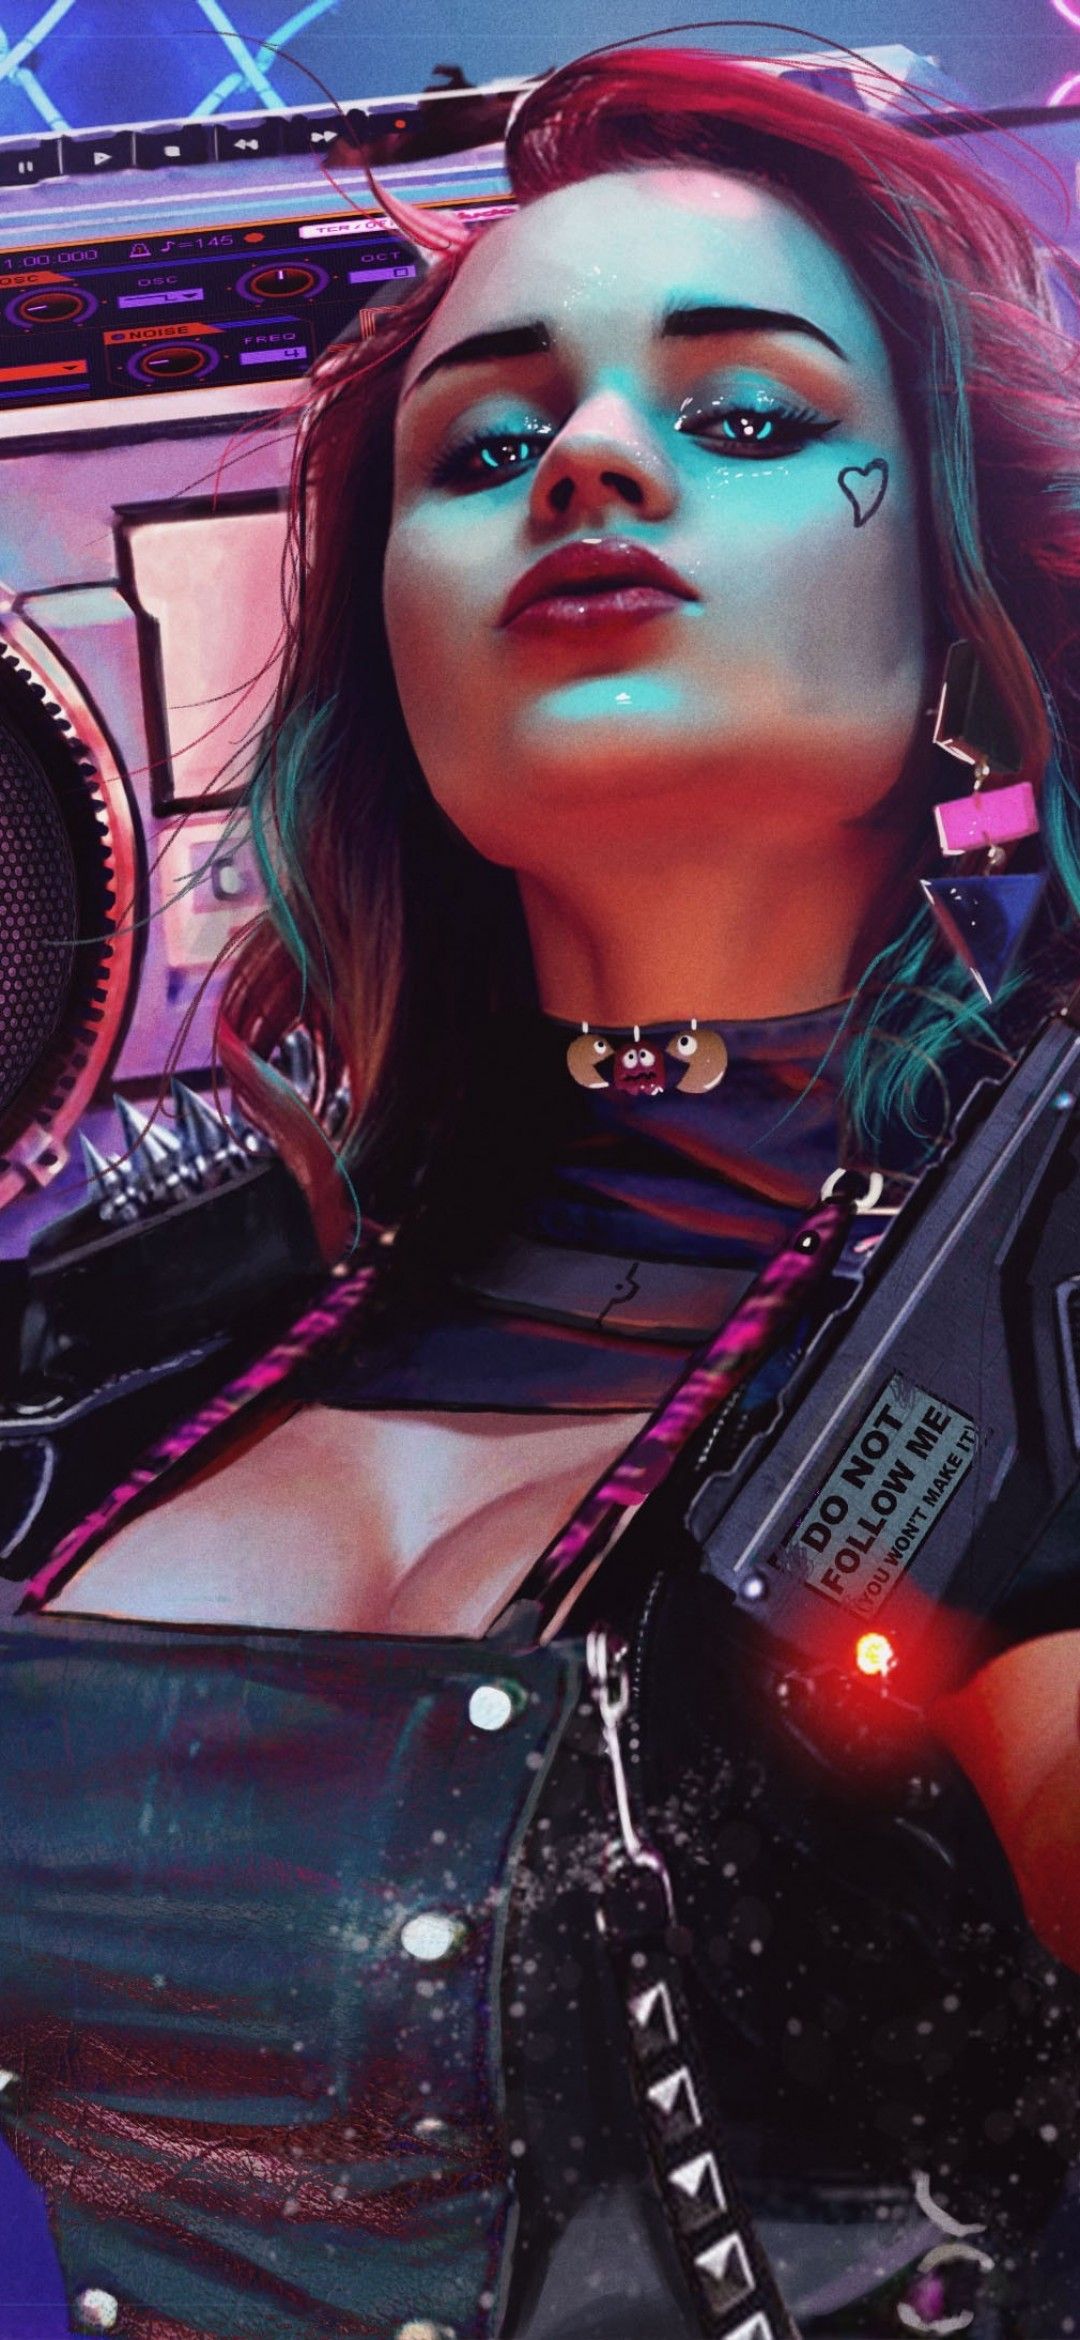 Cyberpunk girl 4K Wallpaper, 2020 Games, Cyberpunk Neon, Artwork, Games